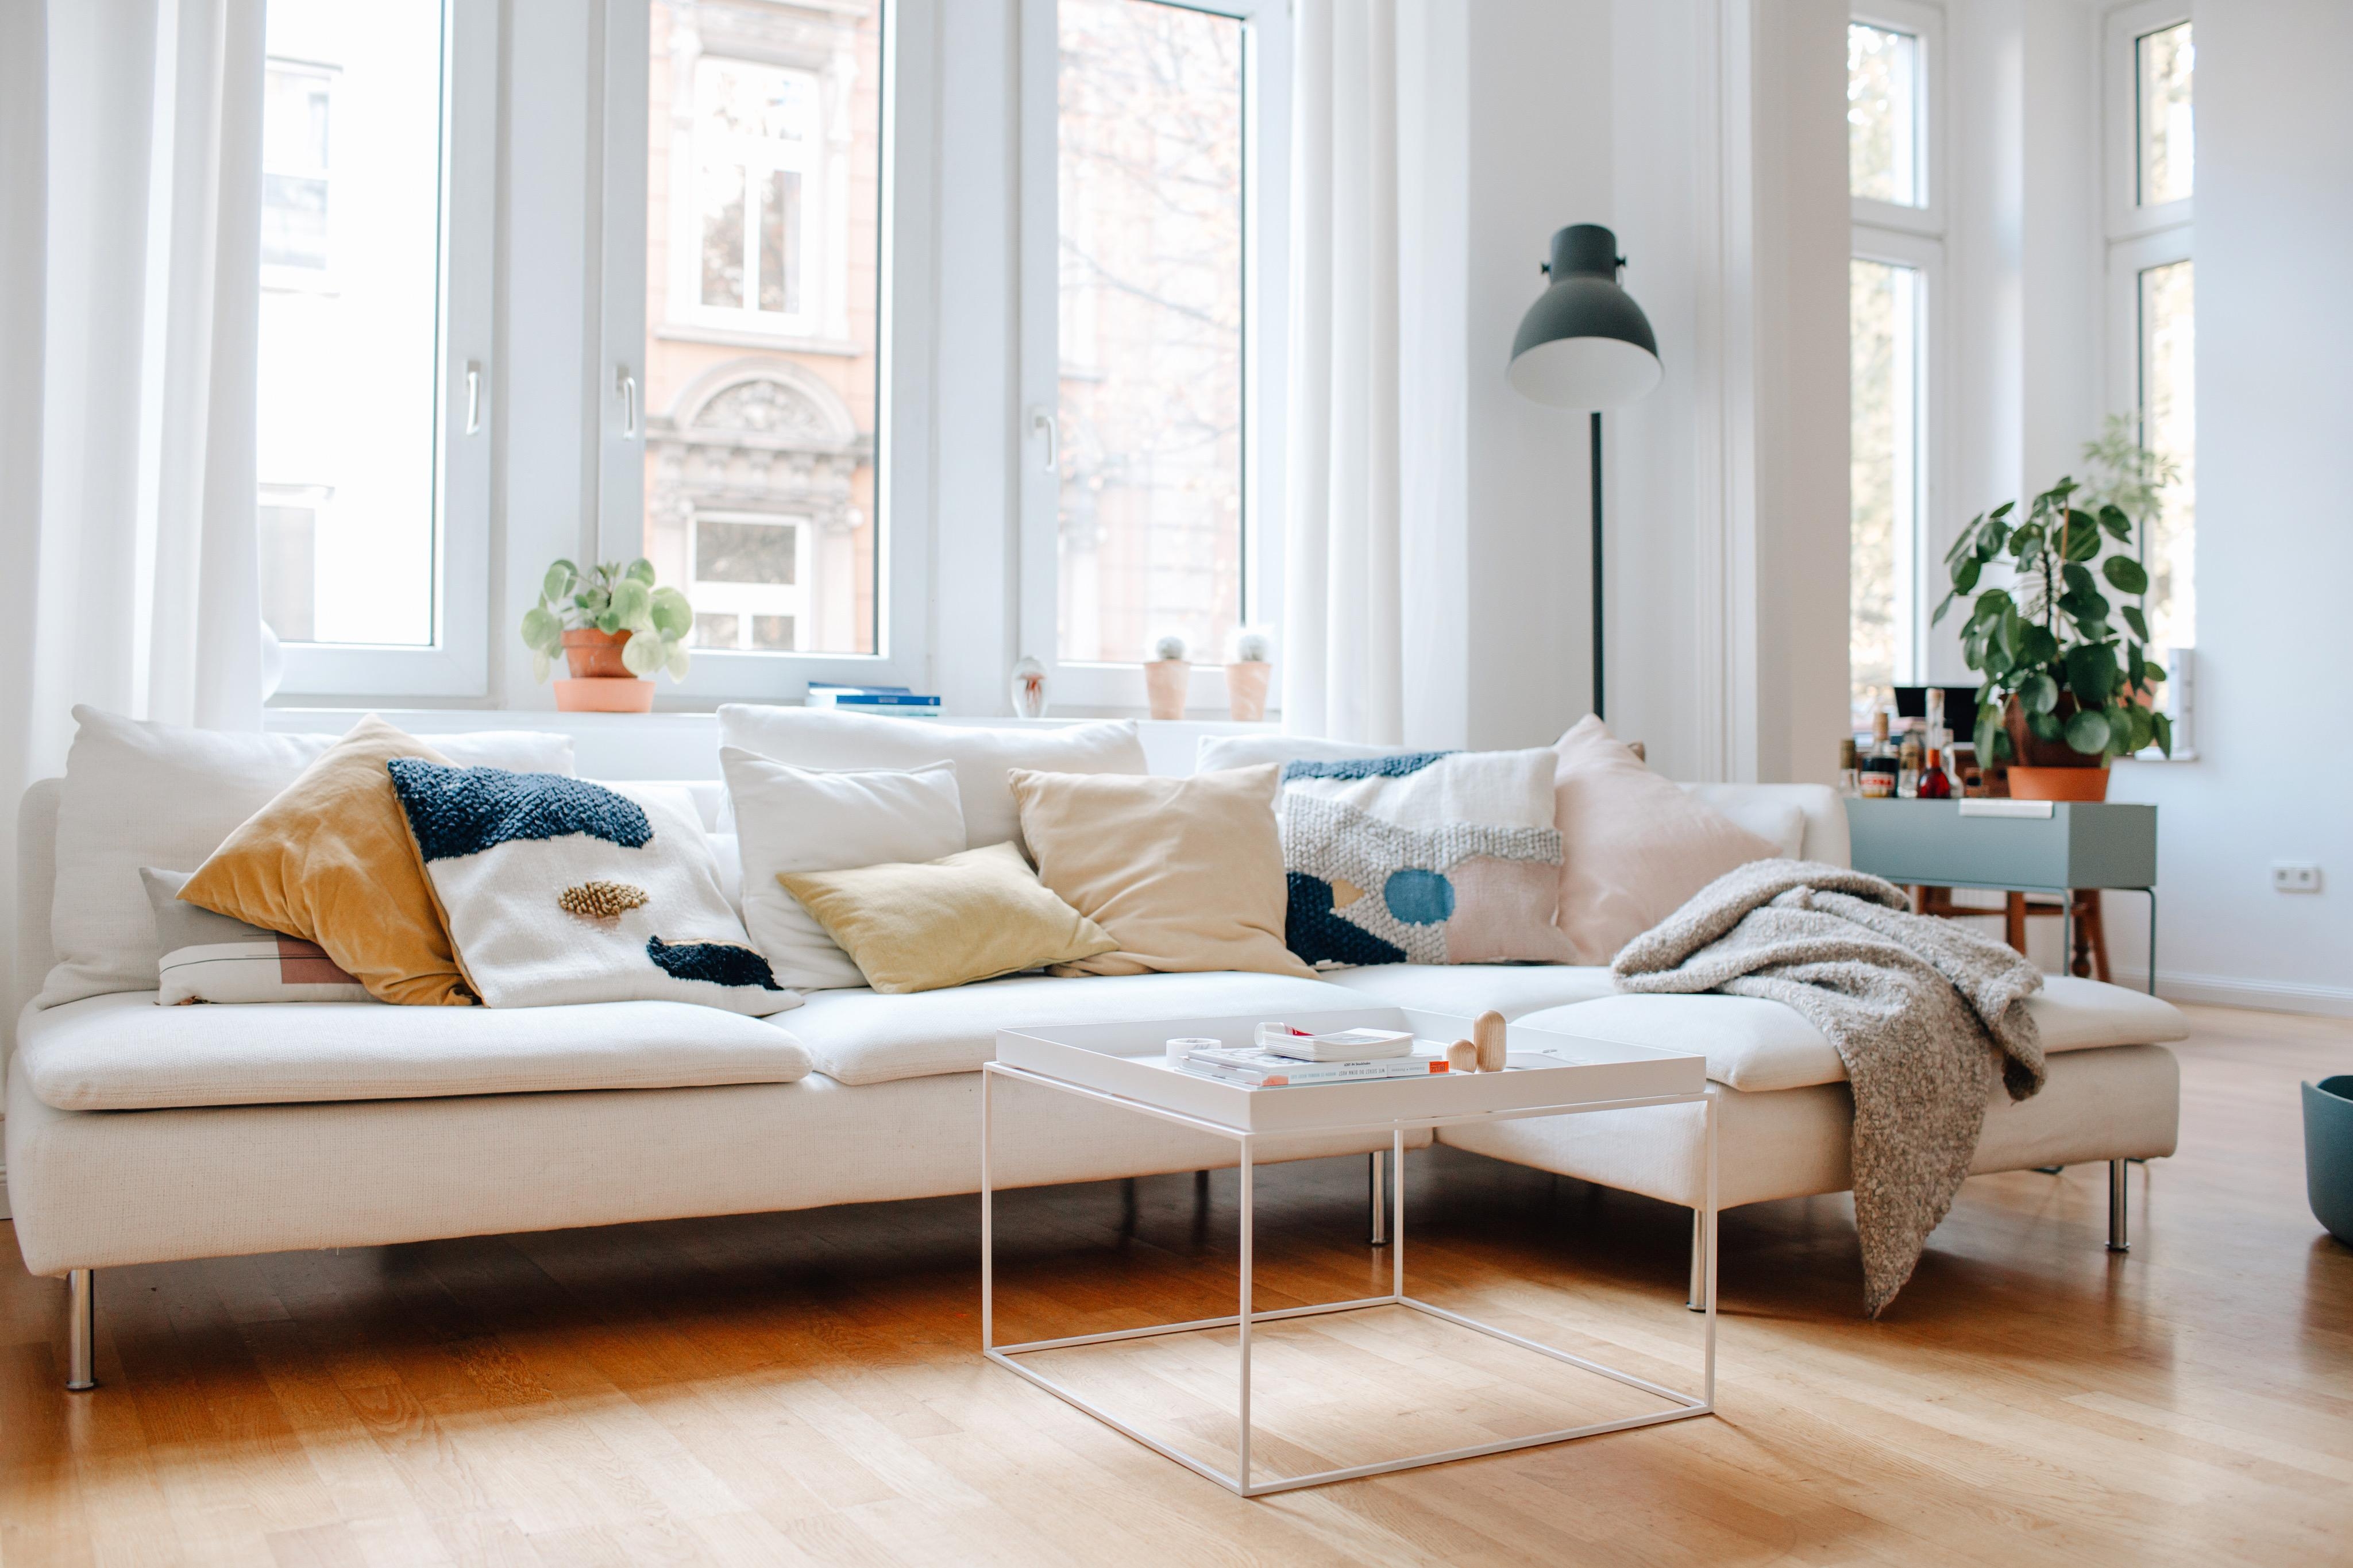 Wer ist noch alles für einen Tag auf dem Sofa ? 🙋🏼‍♀️

#livingroom #couchstyle #ikea #fermliving